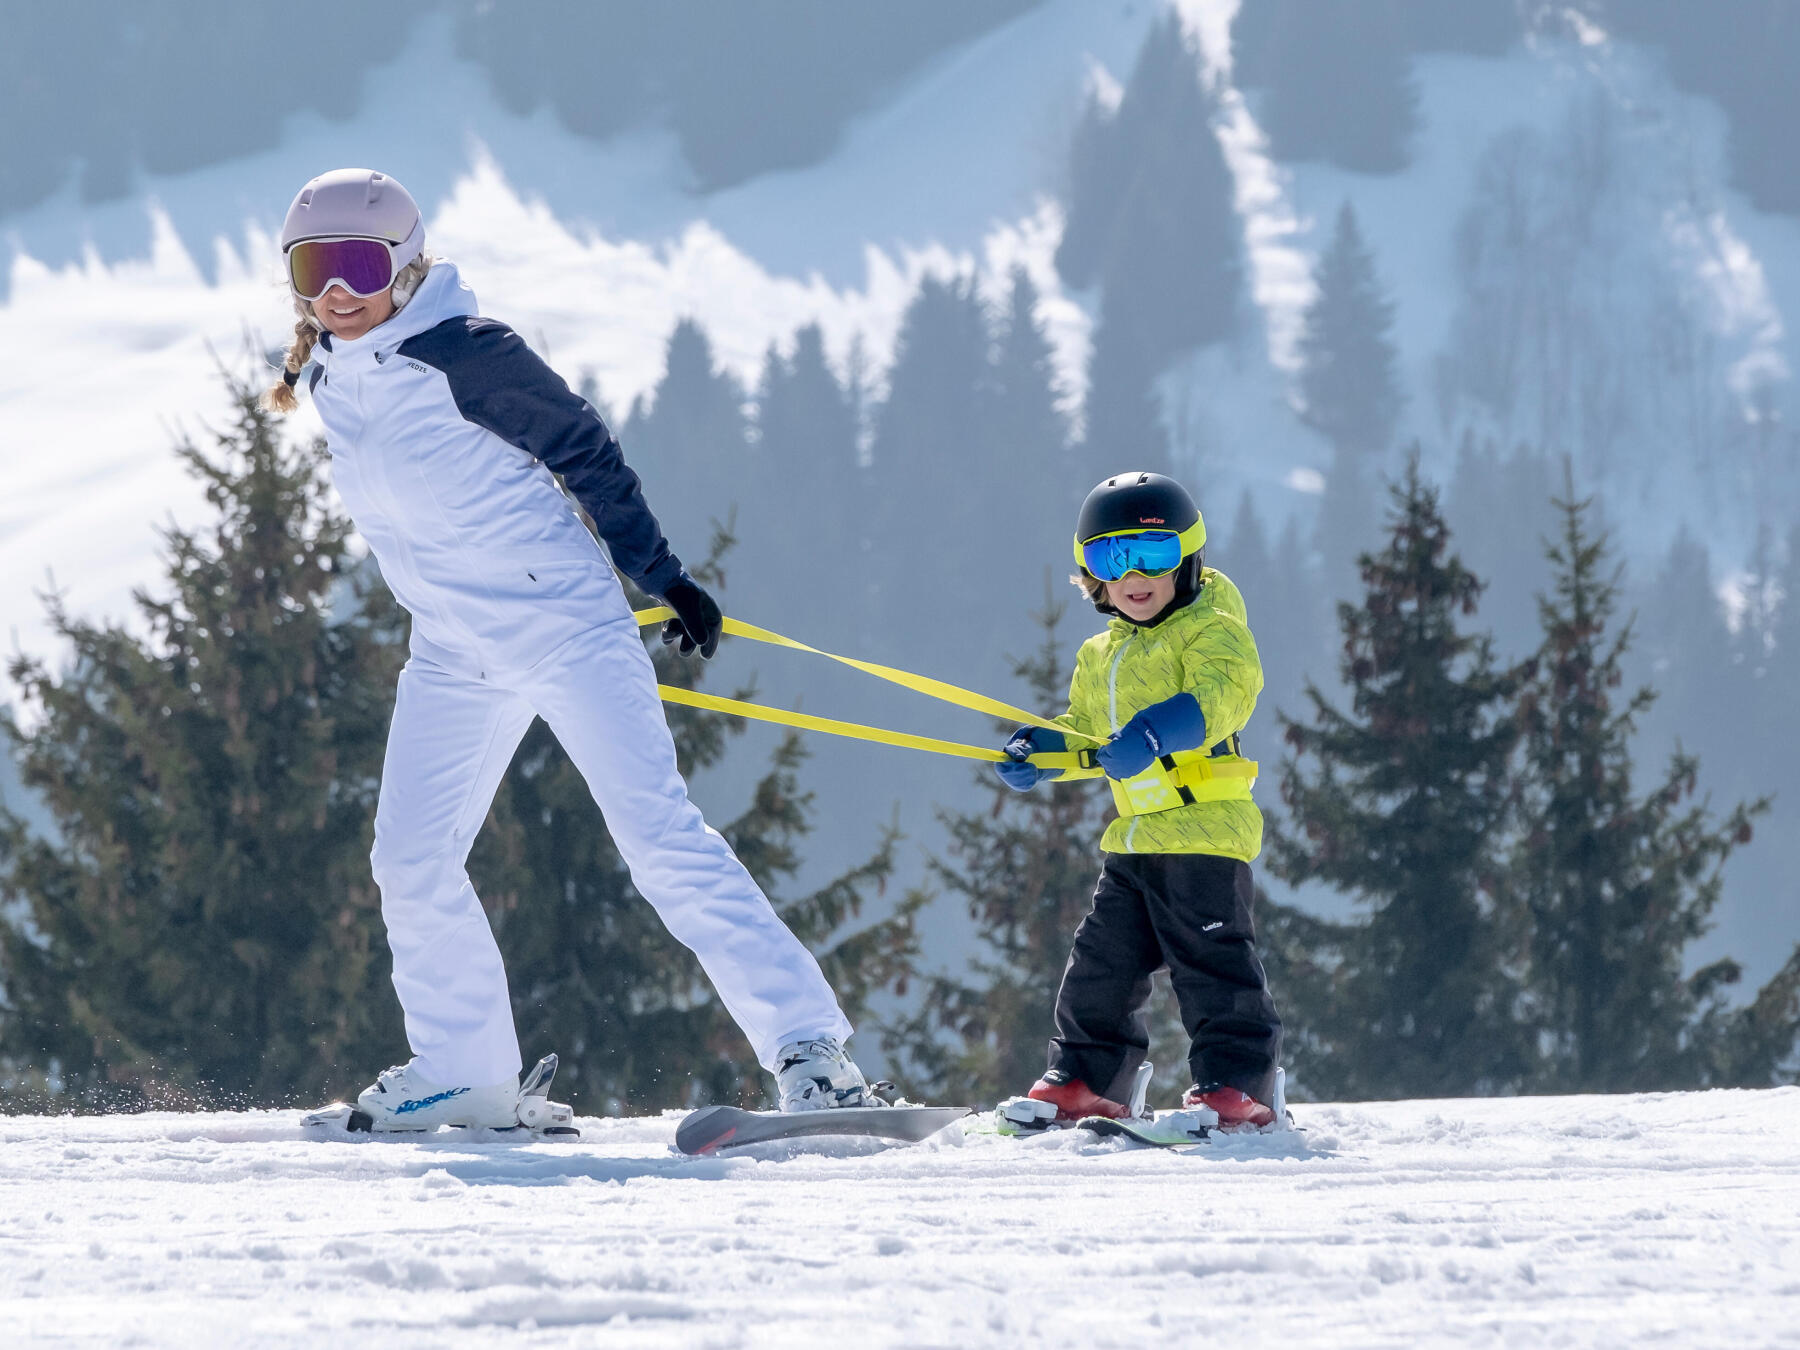 apresentar o ski às crianças